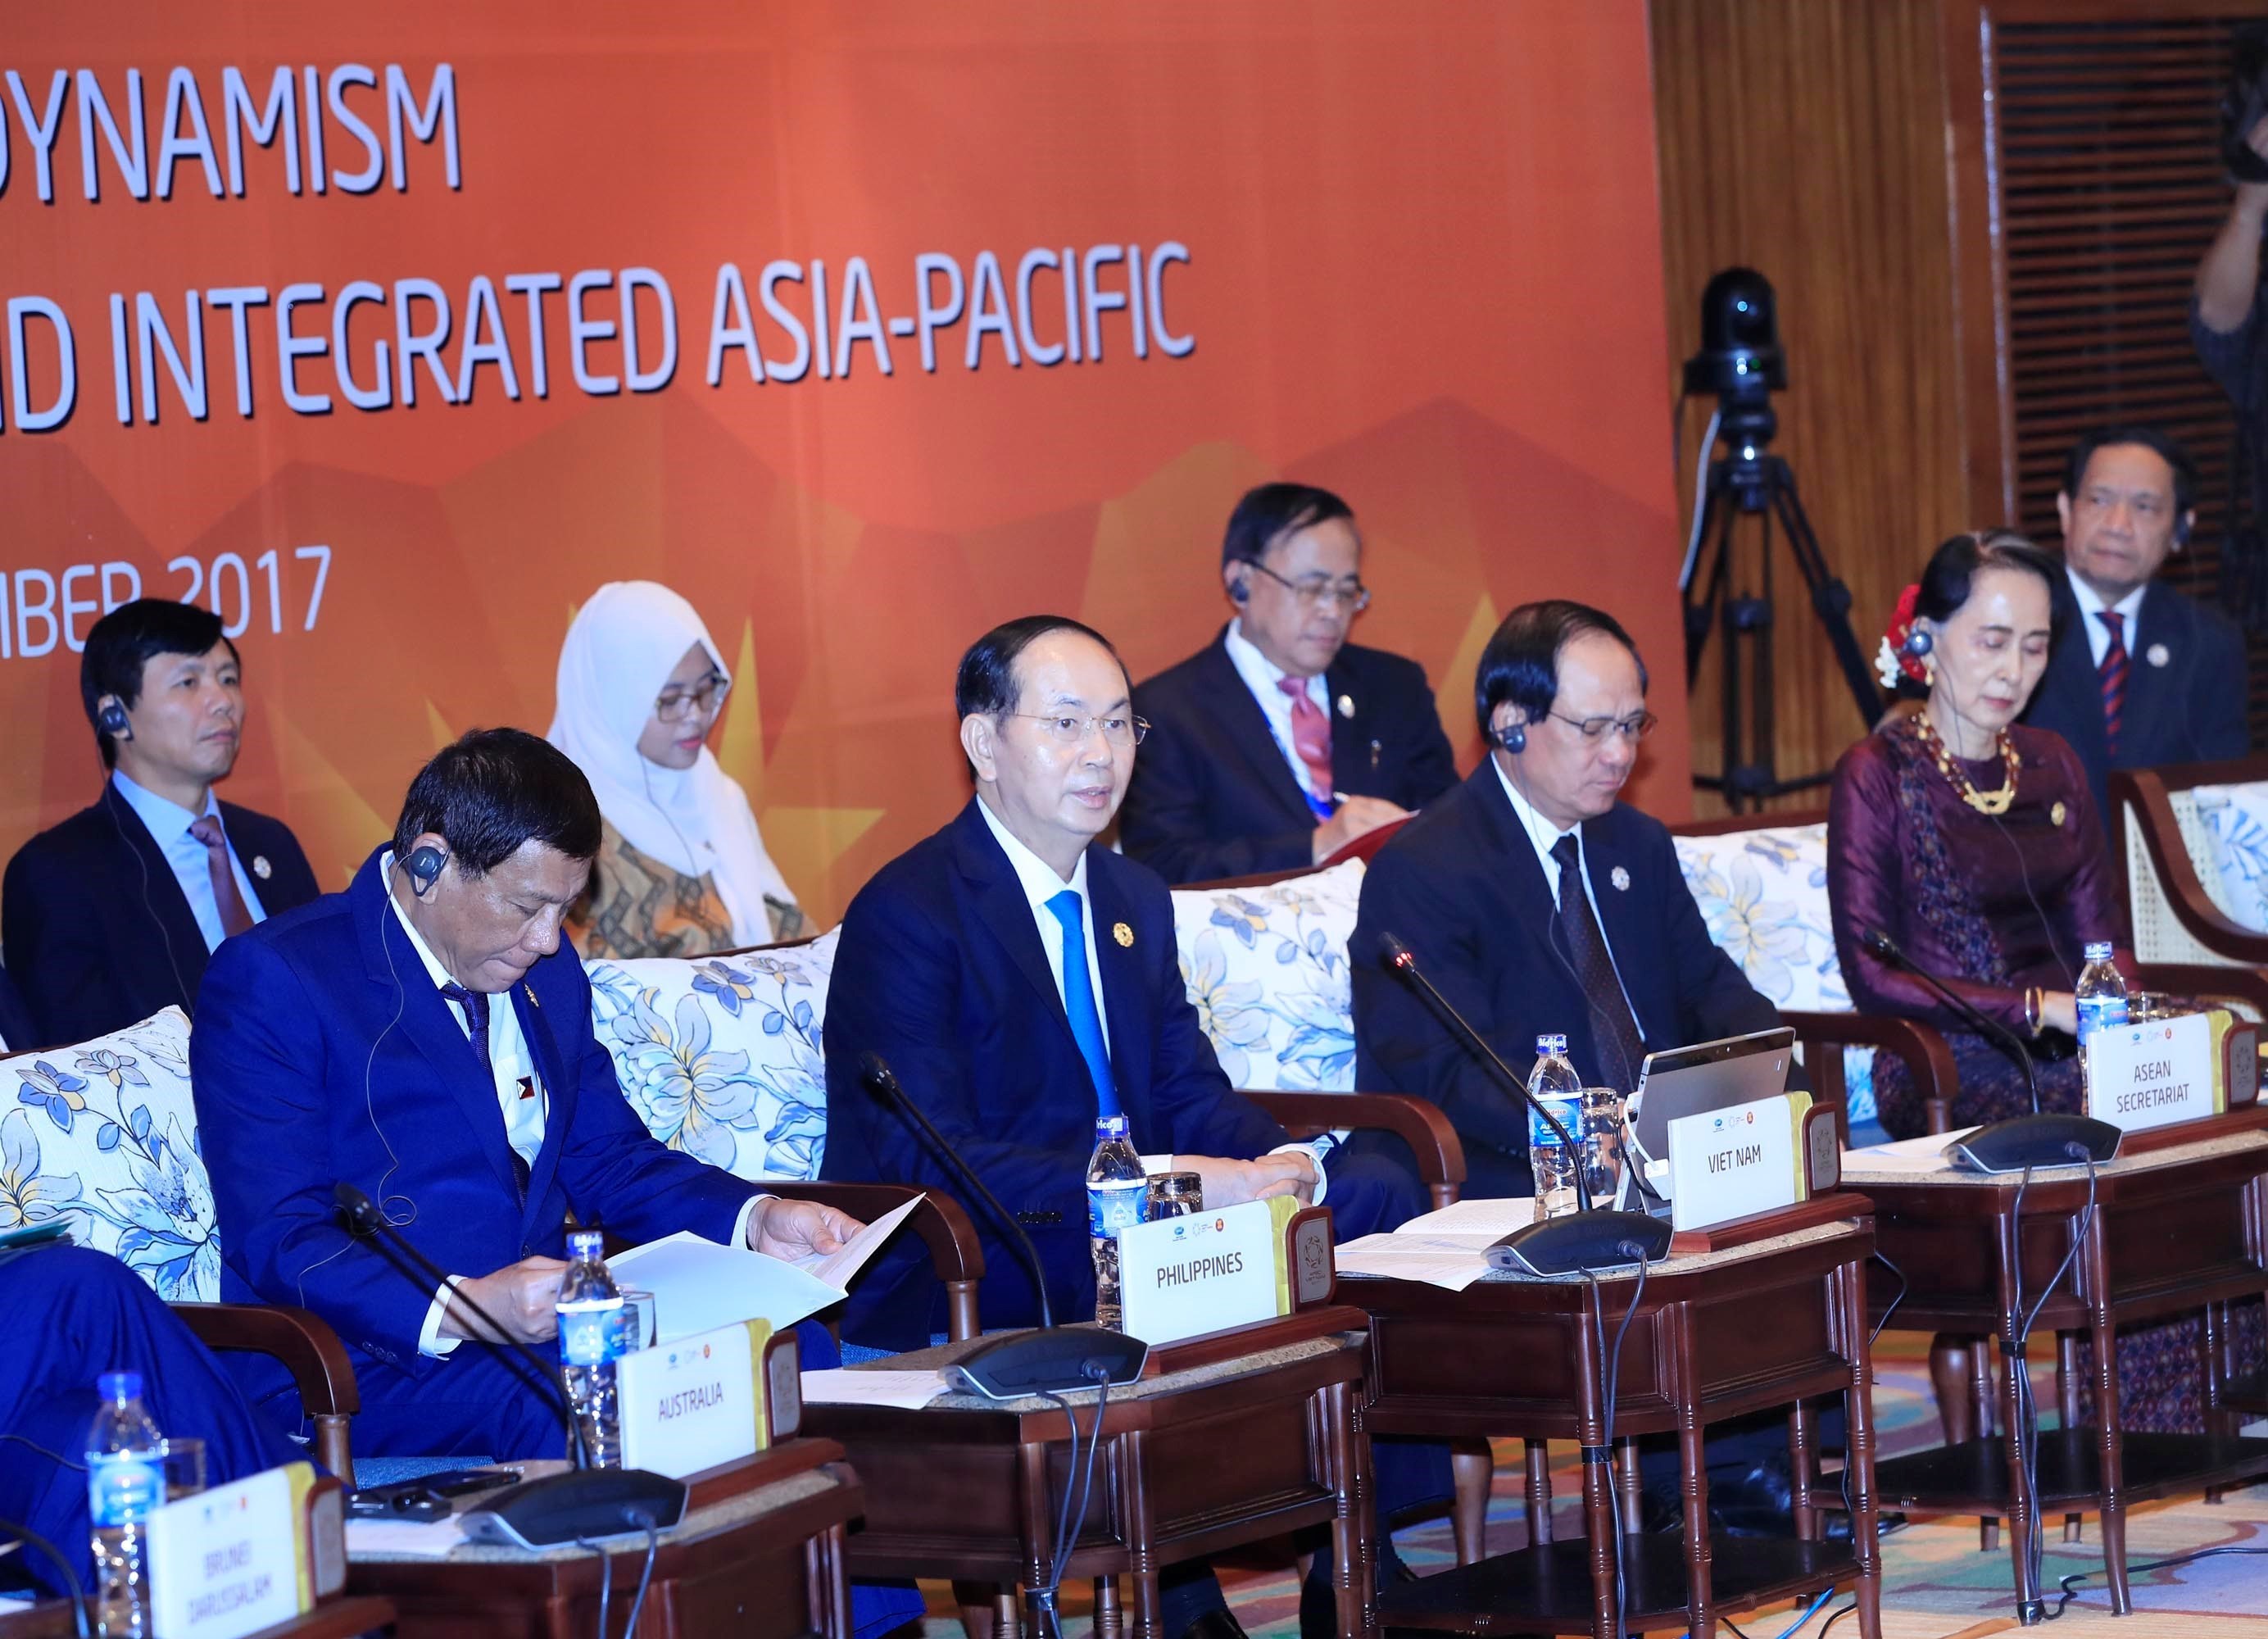 Chủ tịch nước Trần Đại Quang chủ trì Đối thoại Cấp cao không chính thức APEC - ASEAN “Cùng tạo động lực mới vì một châu Á - Thái Bình Dương kết nối toàn diện”